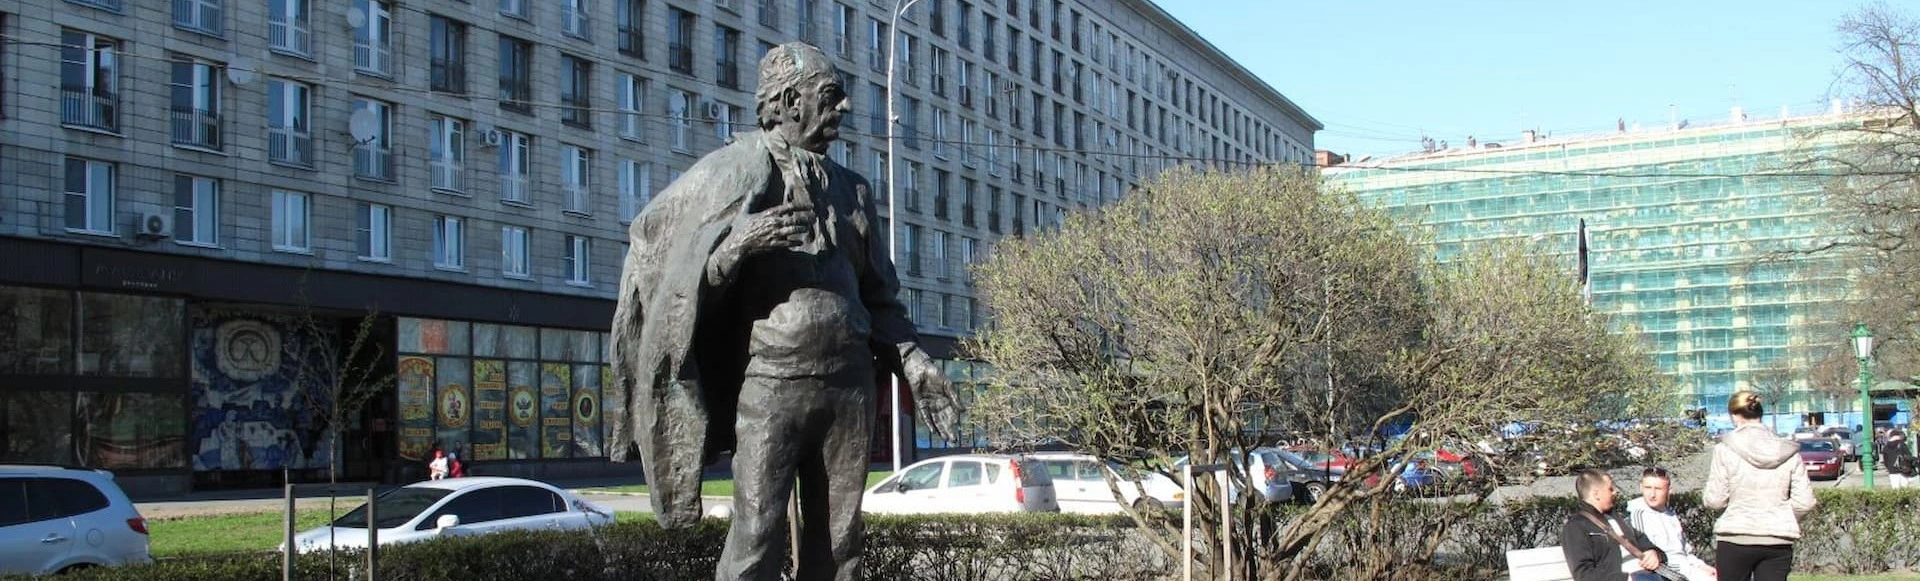 Памятник Товстоногову получил новую подсветку